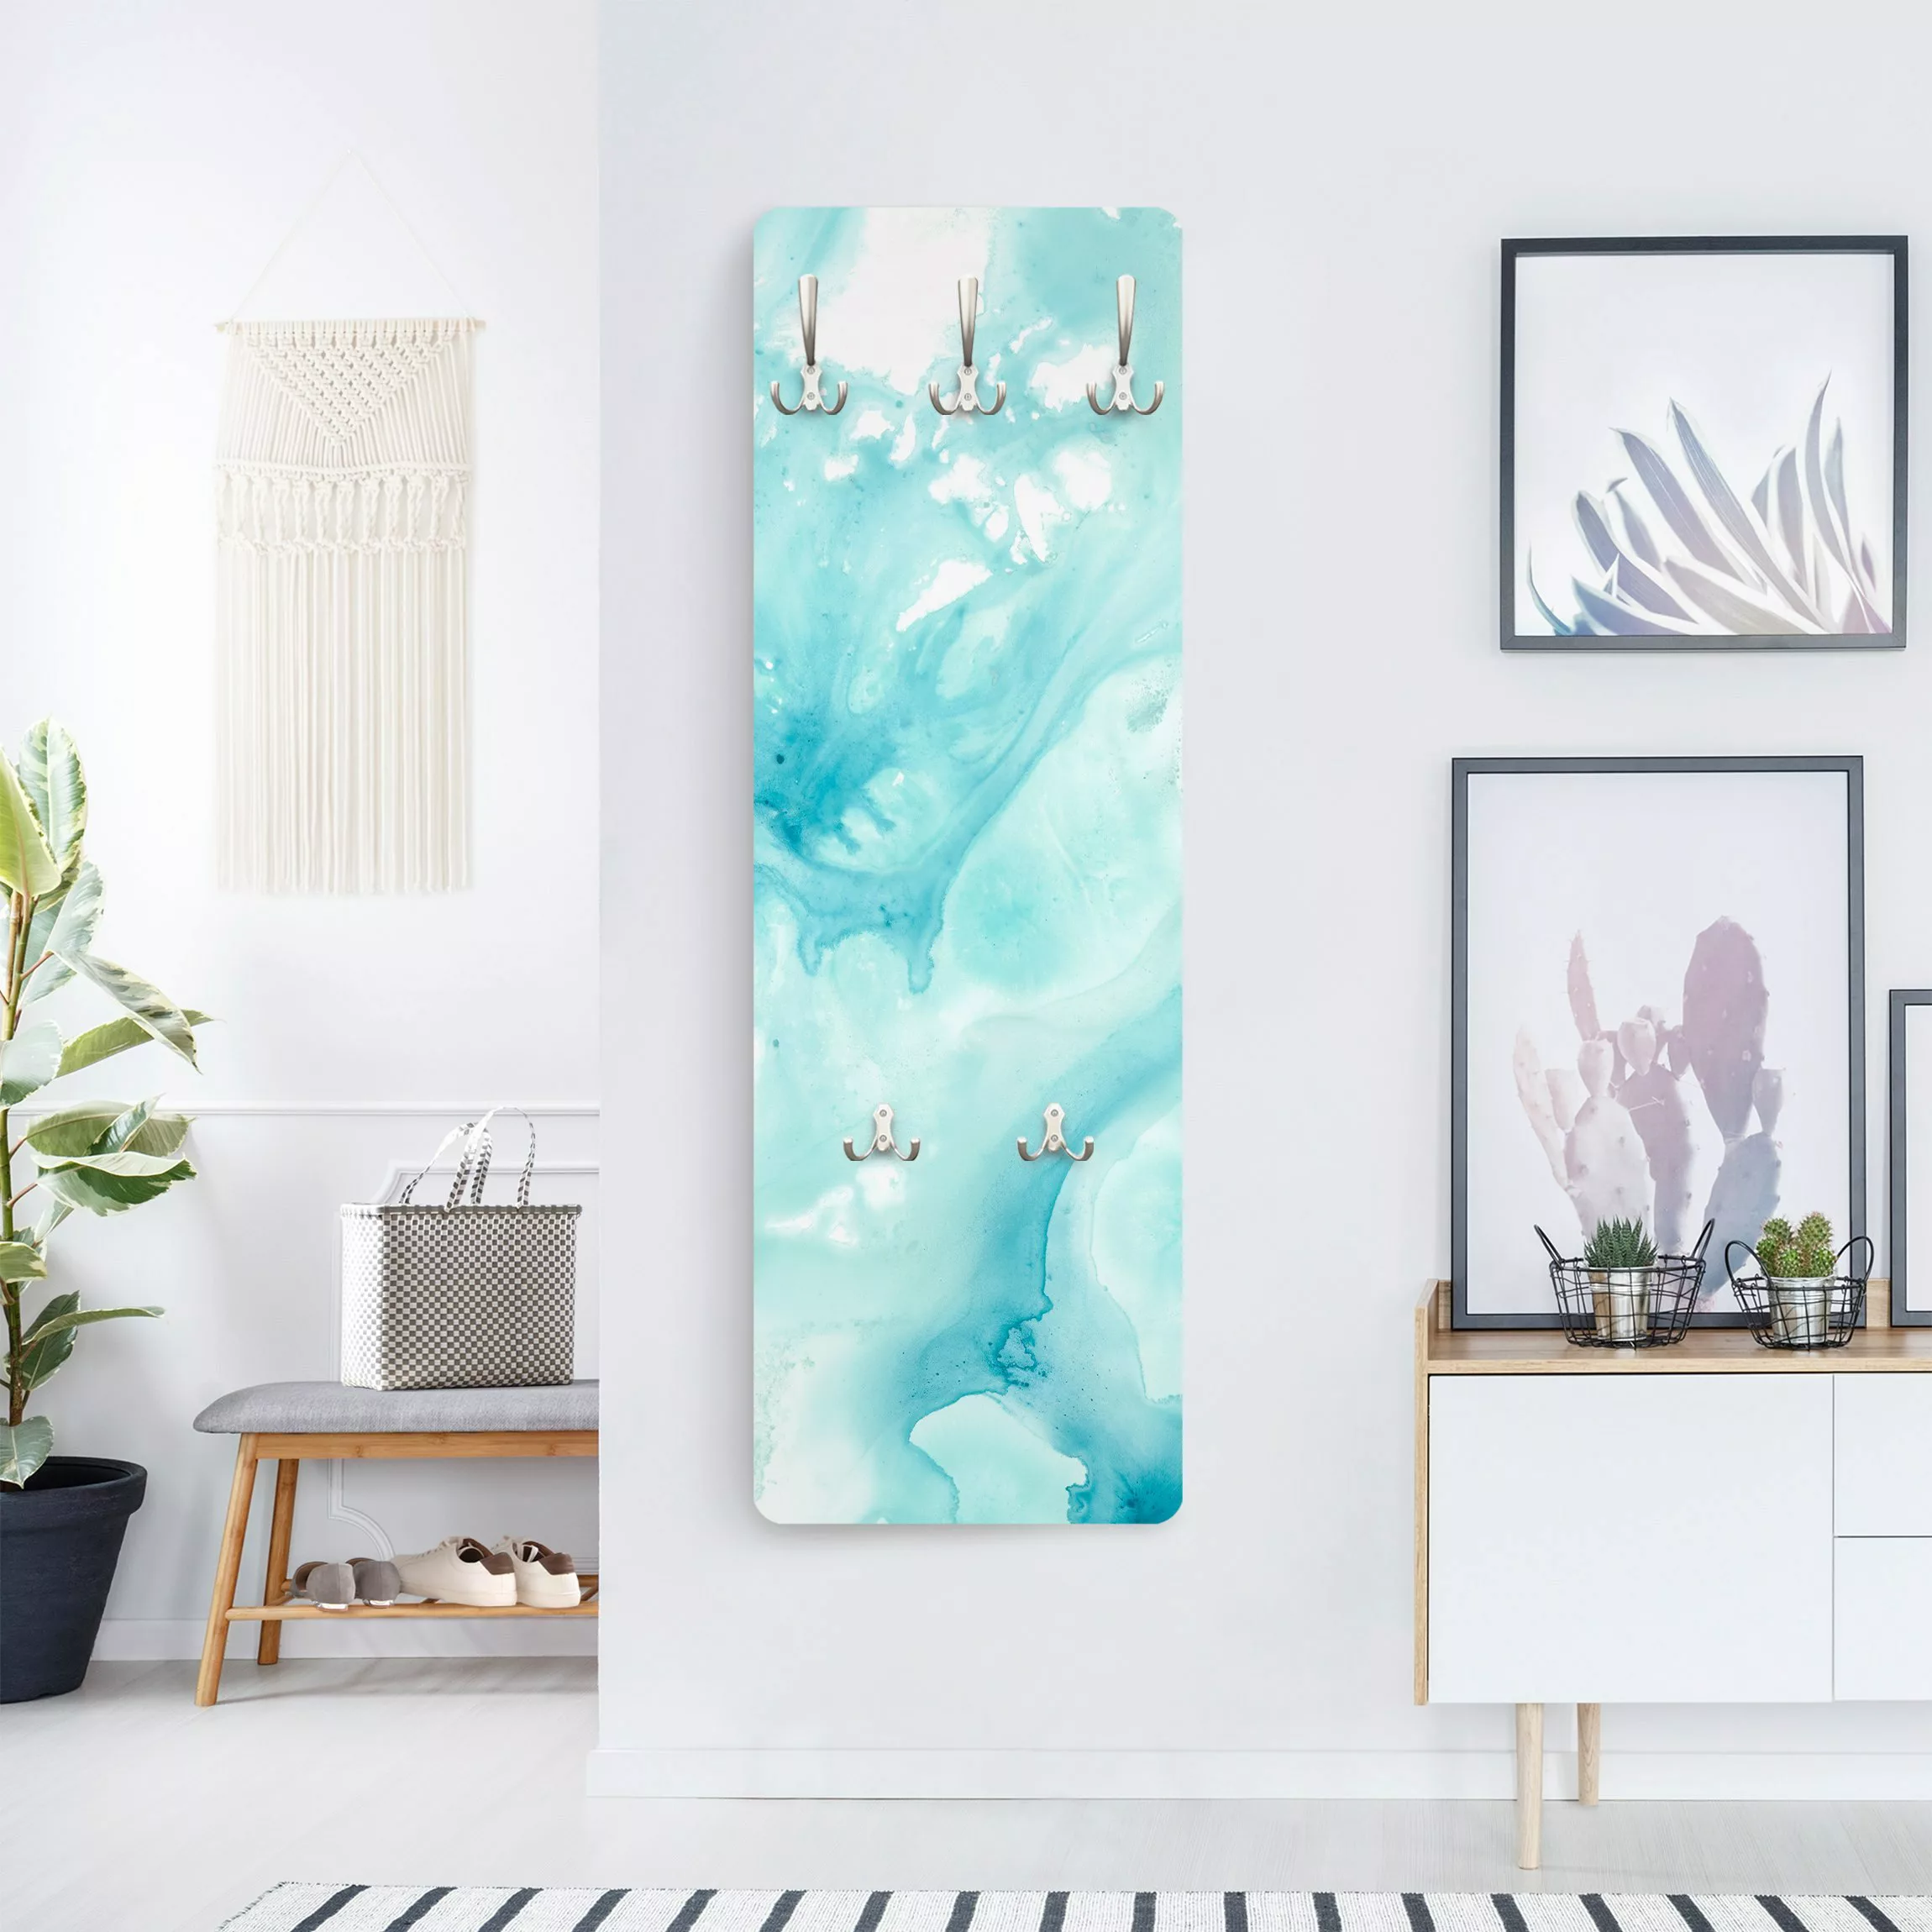 Wandgarderobe Holzpaneel Abstrakt Emulsion in weiß und türkis I günstig online kaufen